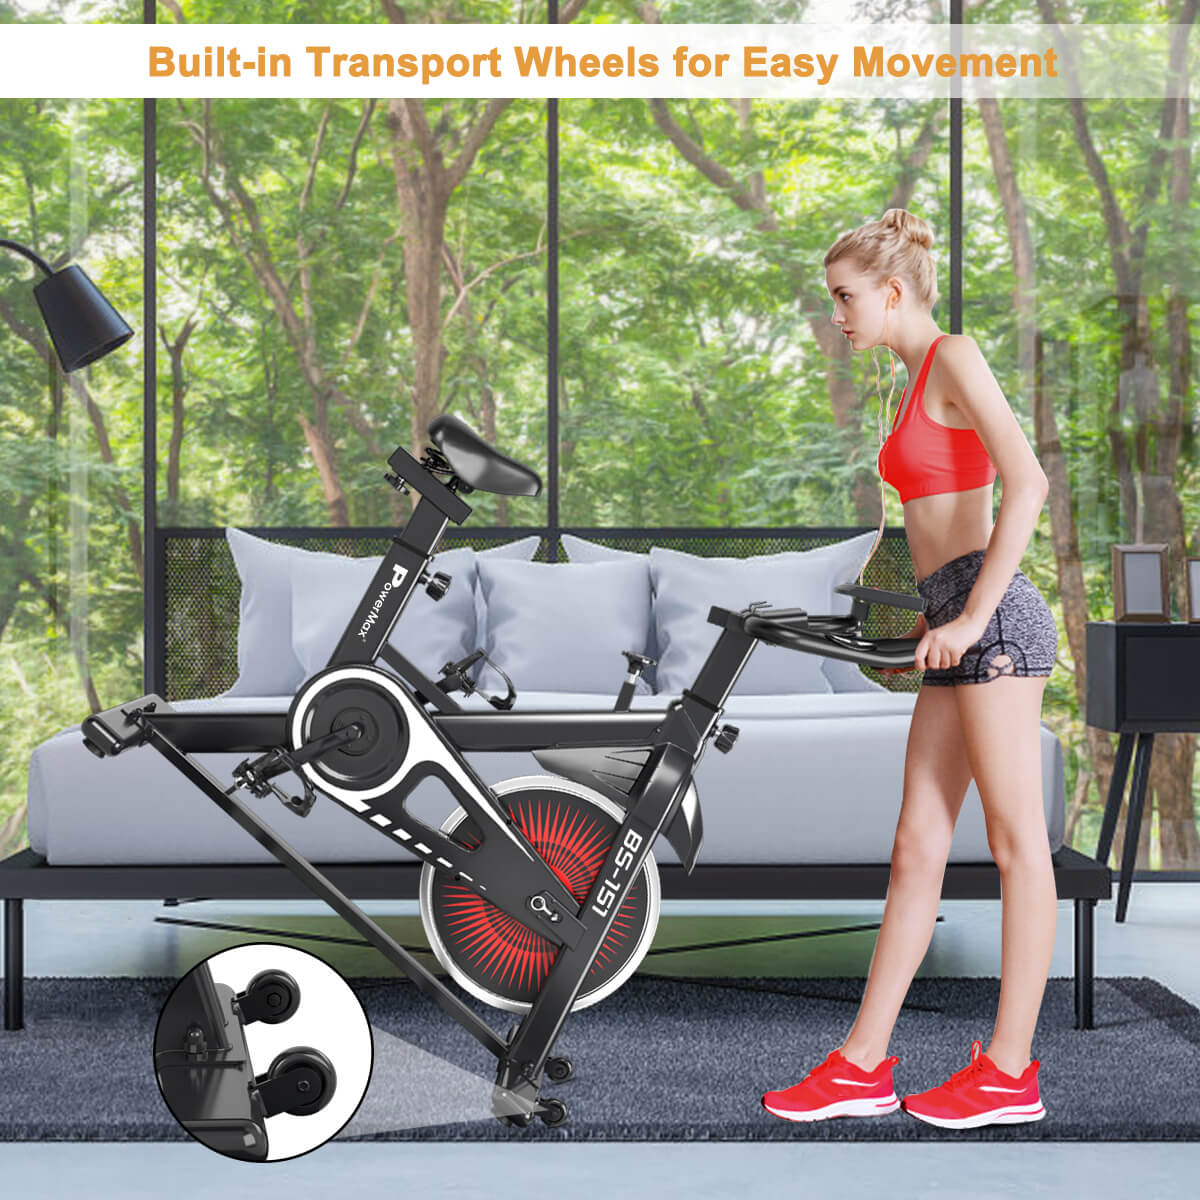 New BS-151 Home Use Group Bike/Spin Bike